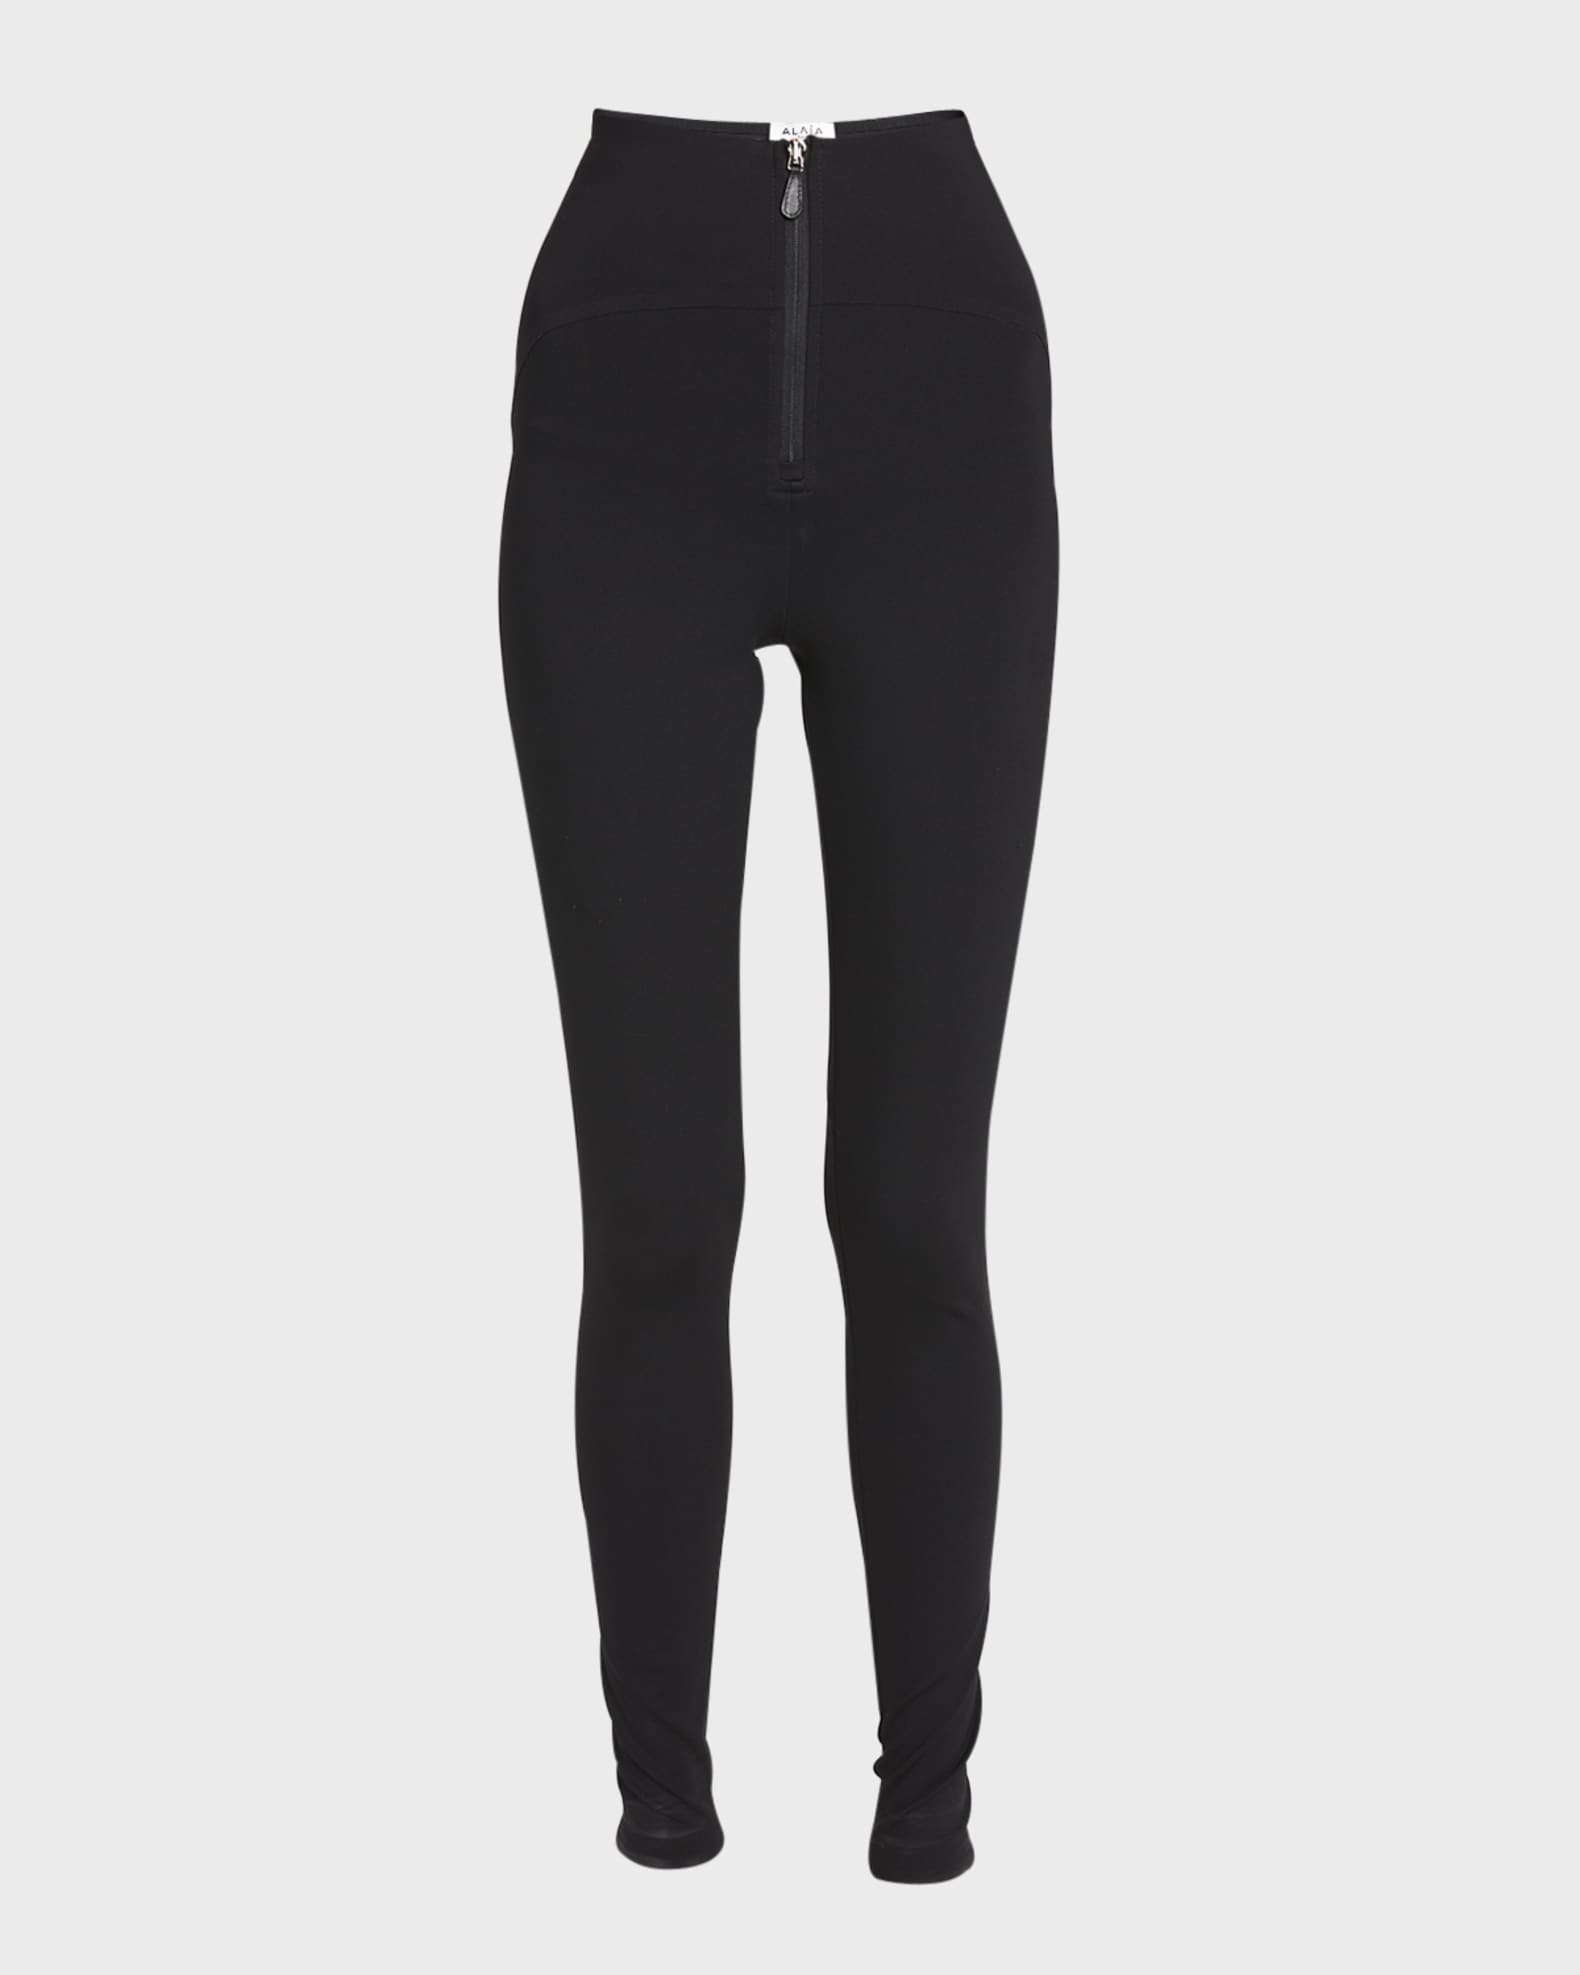 Black Zipped gabardine leggings, ALAÏA